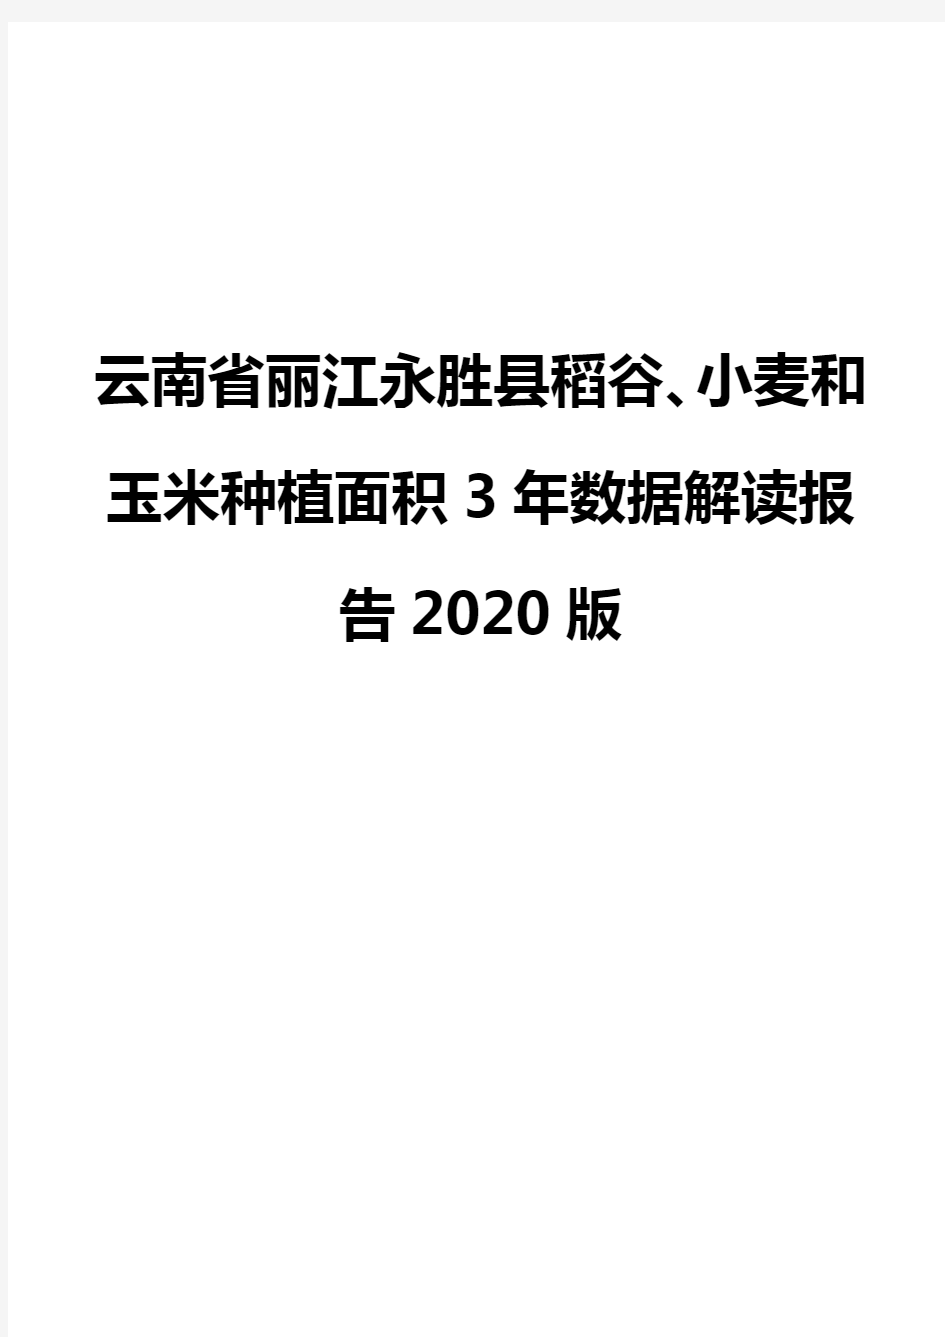 云南省丽江永胜县稻谷、小麦和玉米种植面积3年数据解读报告2020版